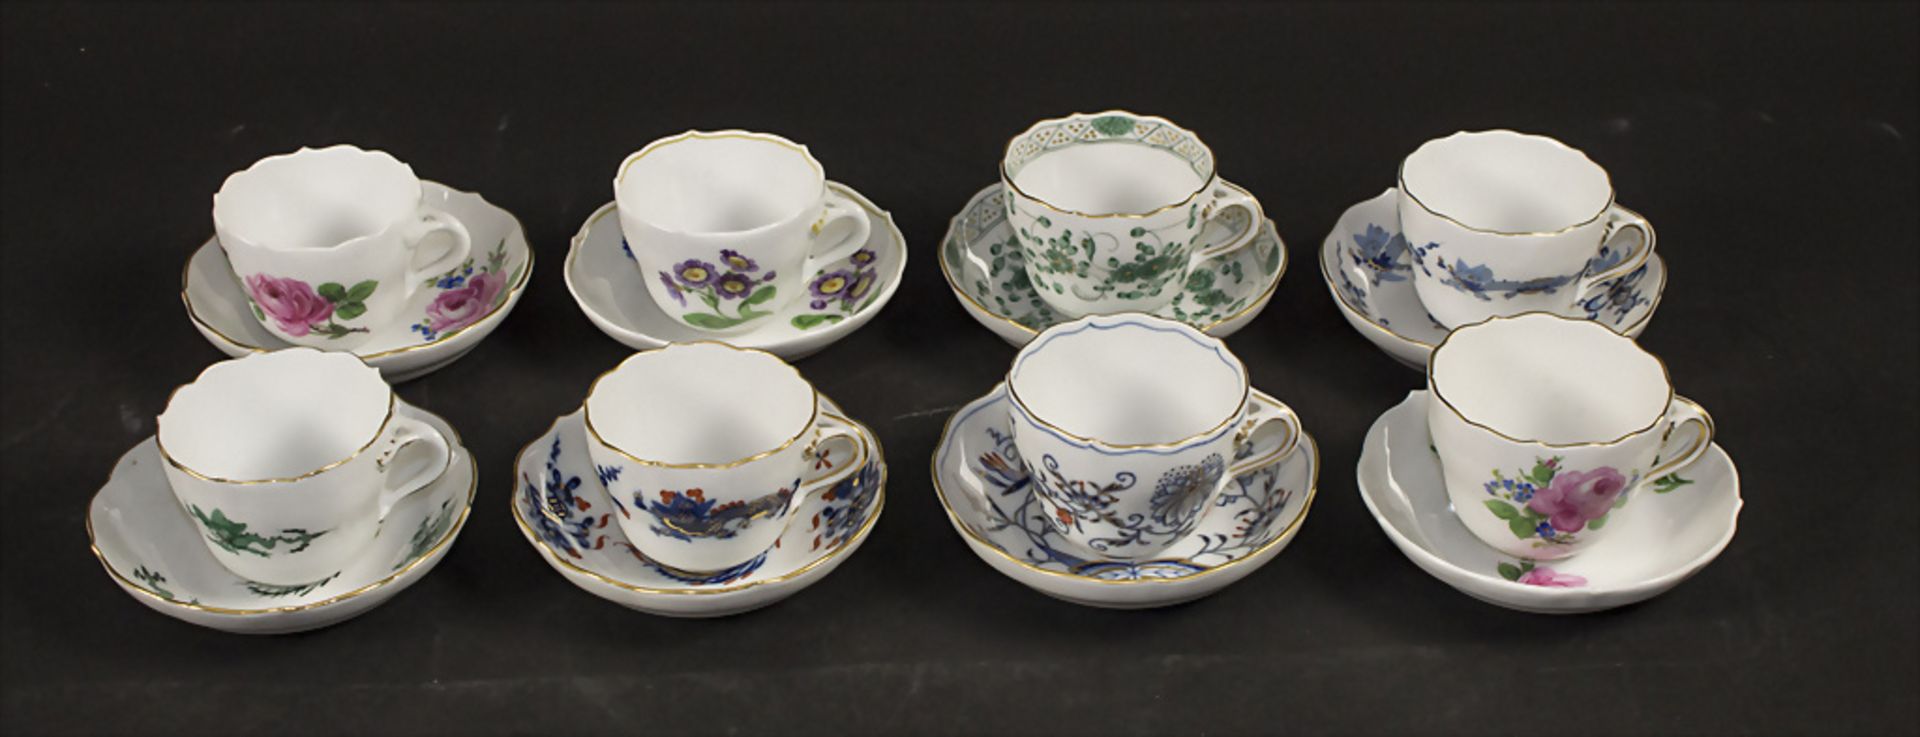 Konvolut aus 8 Tassen mit Untertassen / A set of 8 porcelain cups and saucers, Meissen, 20. Jh.